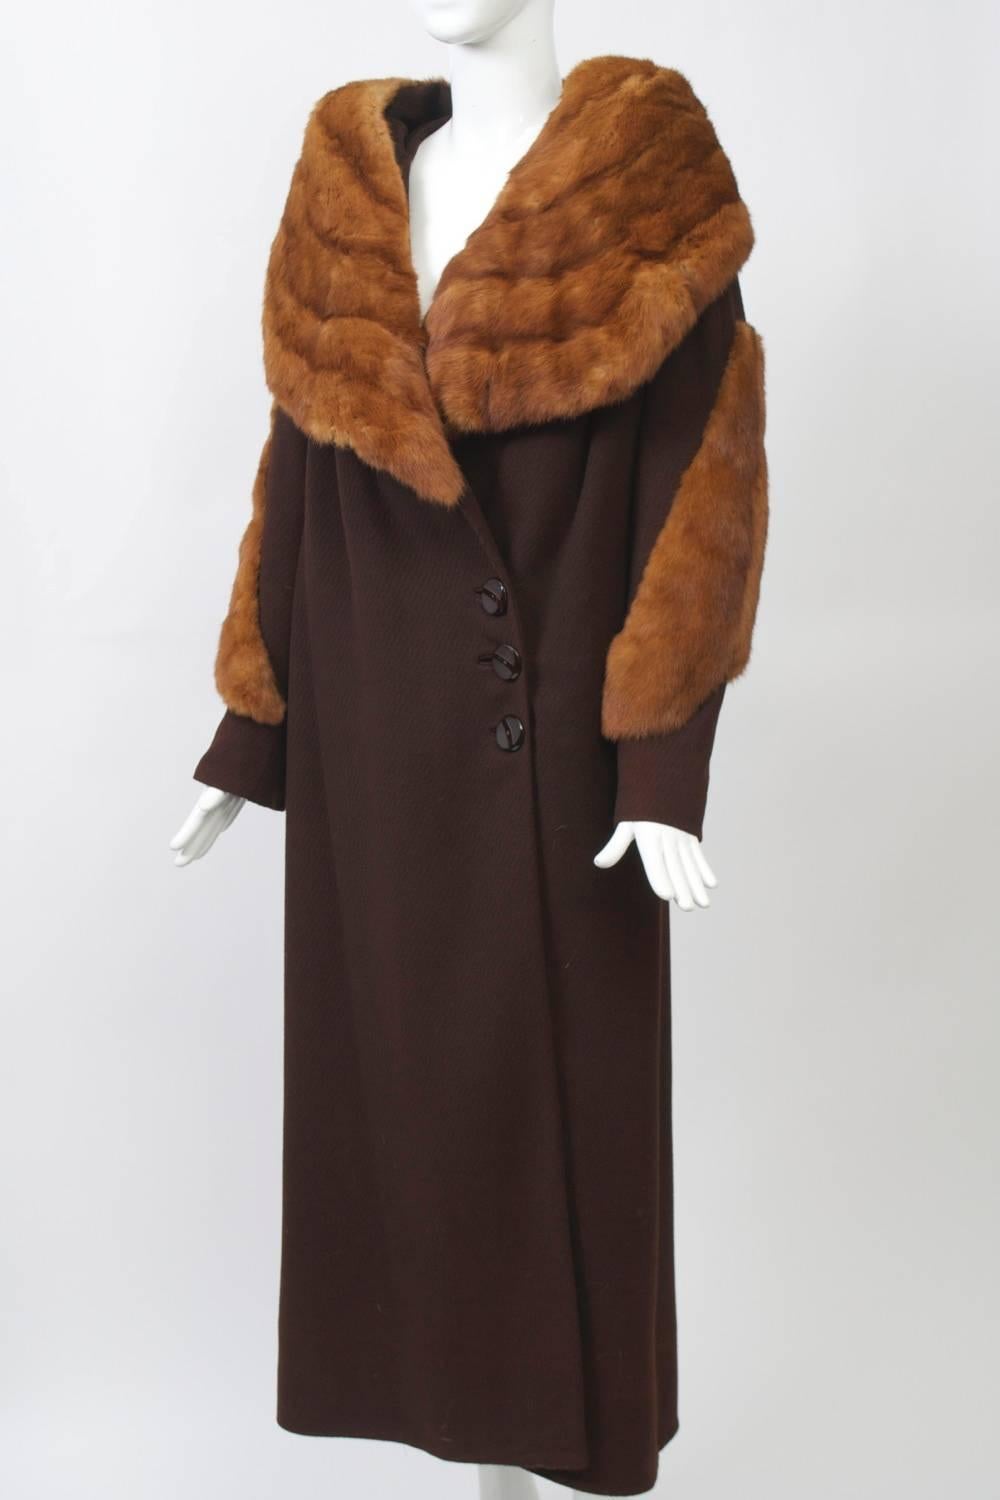 Women's 1930s Fur Trimmed Coat